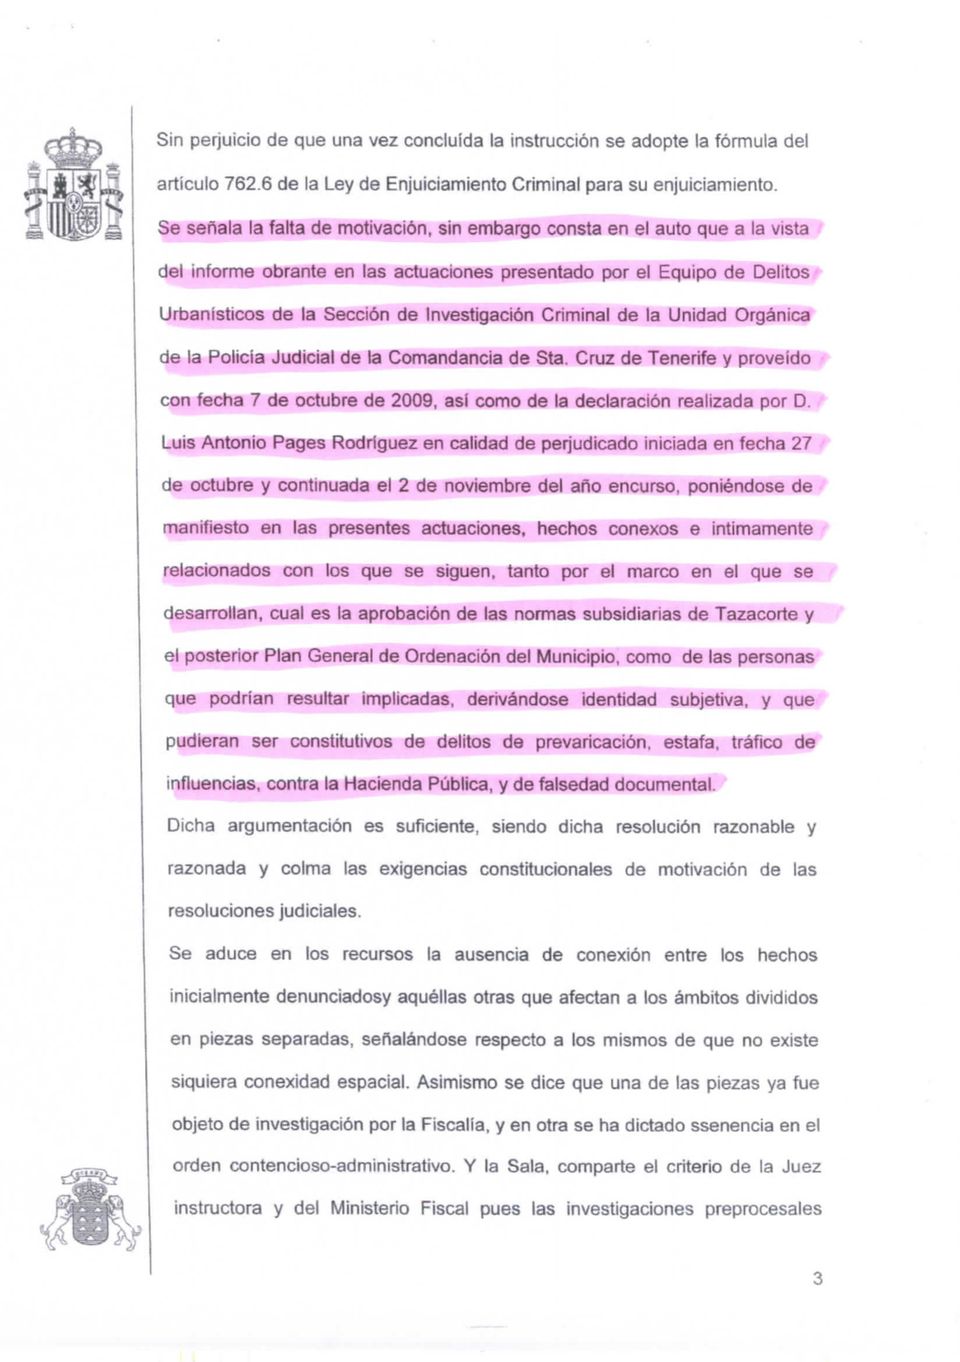 Criminal de la Unidad Orgánica de la Policía Judicial de ta Comandancia de Sta. Cruz de Tenerife y proveído con fecha 7 de octubre de 2009, así como de la declaración realizada por D.